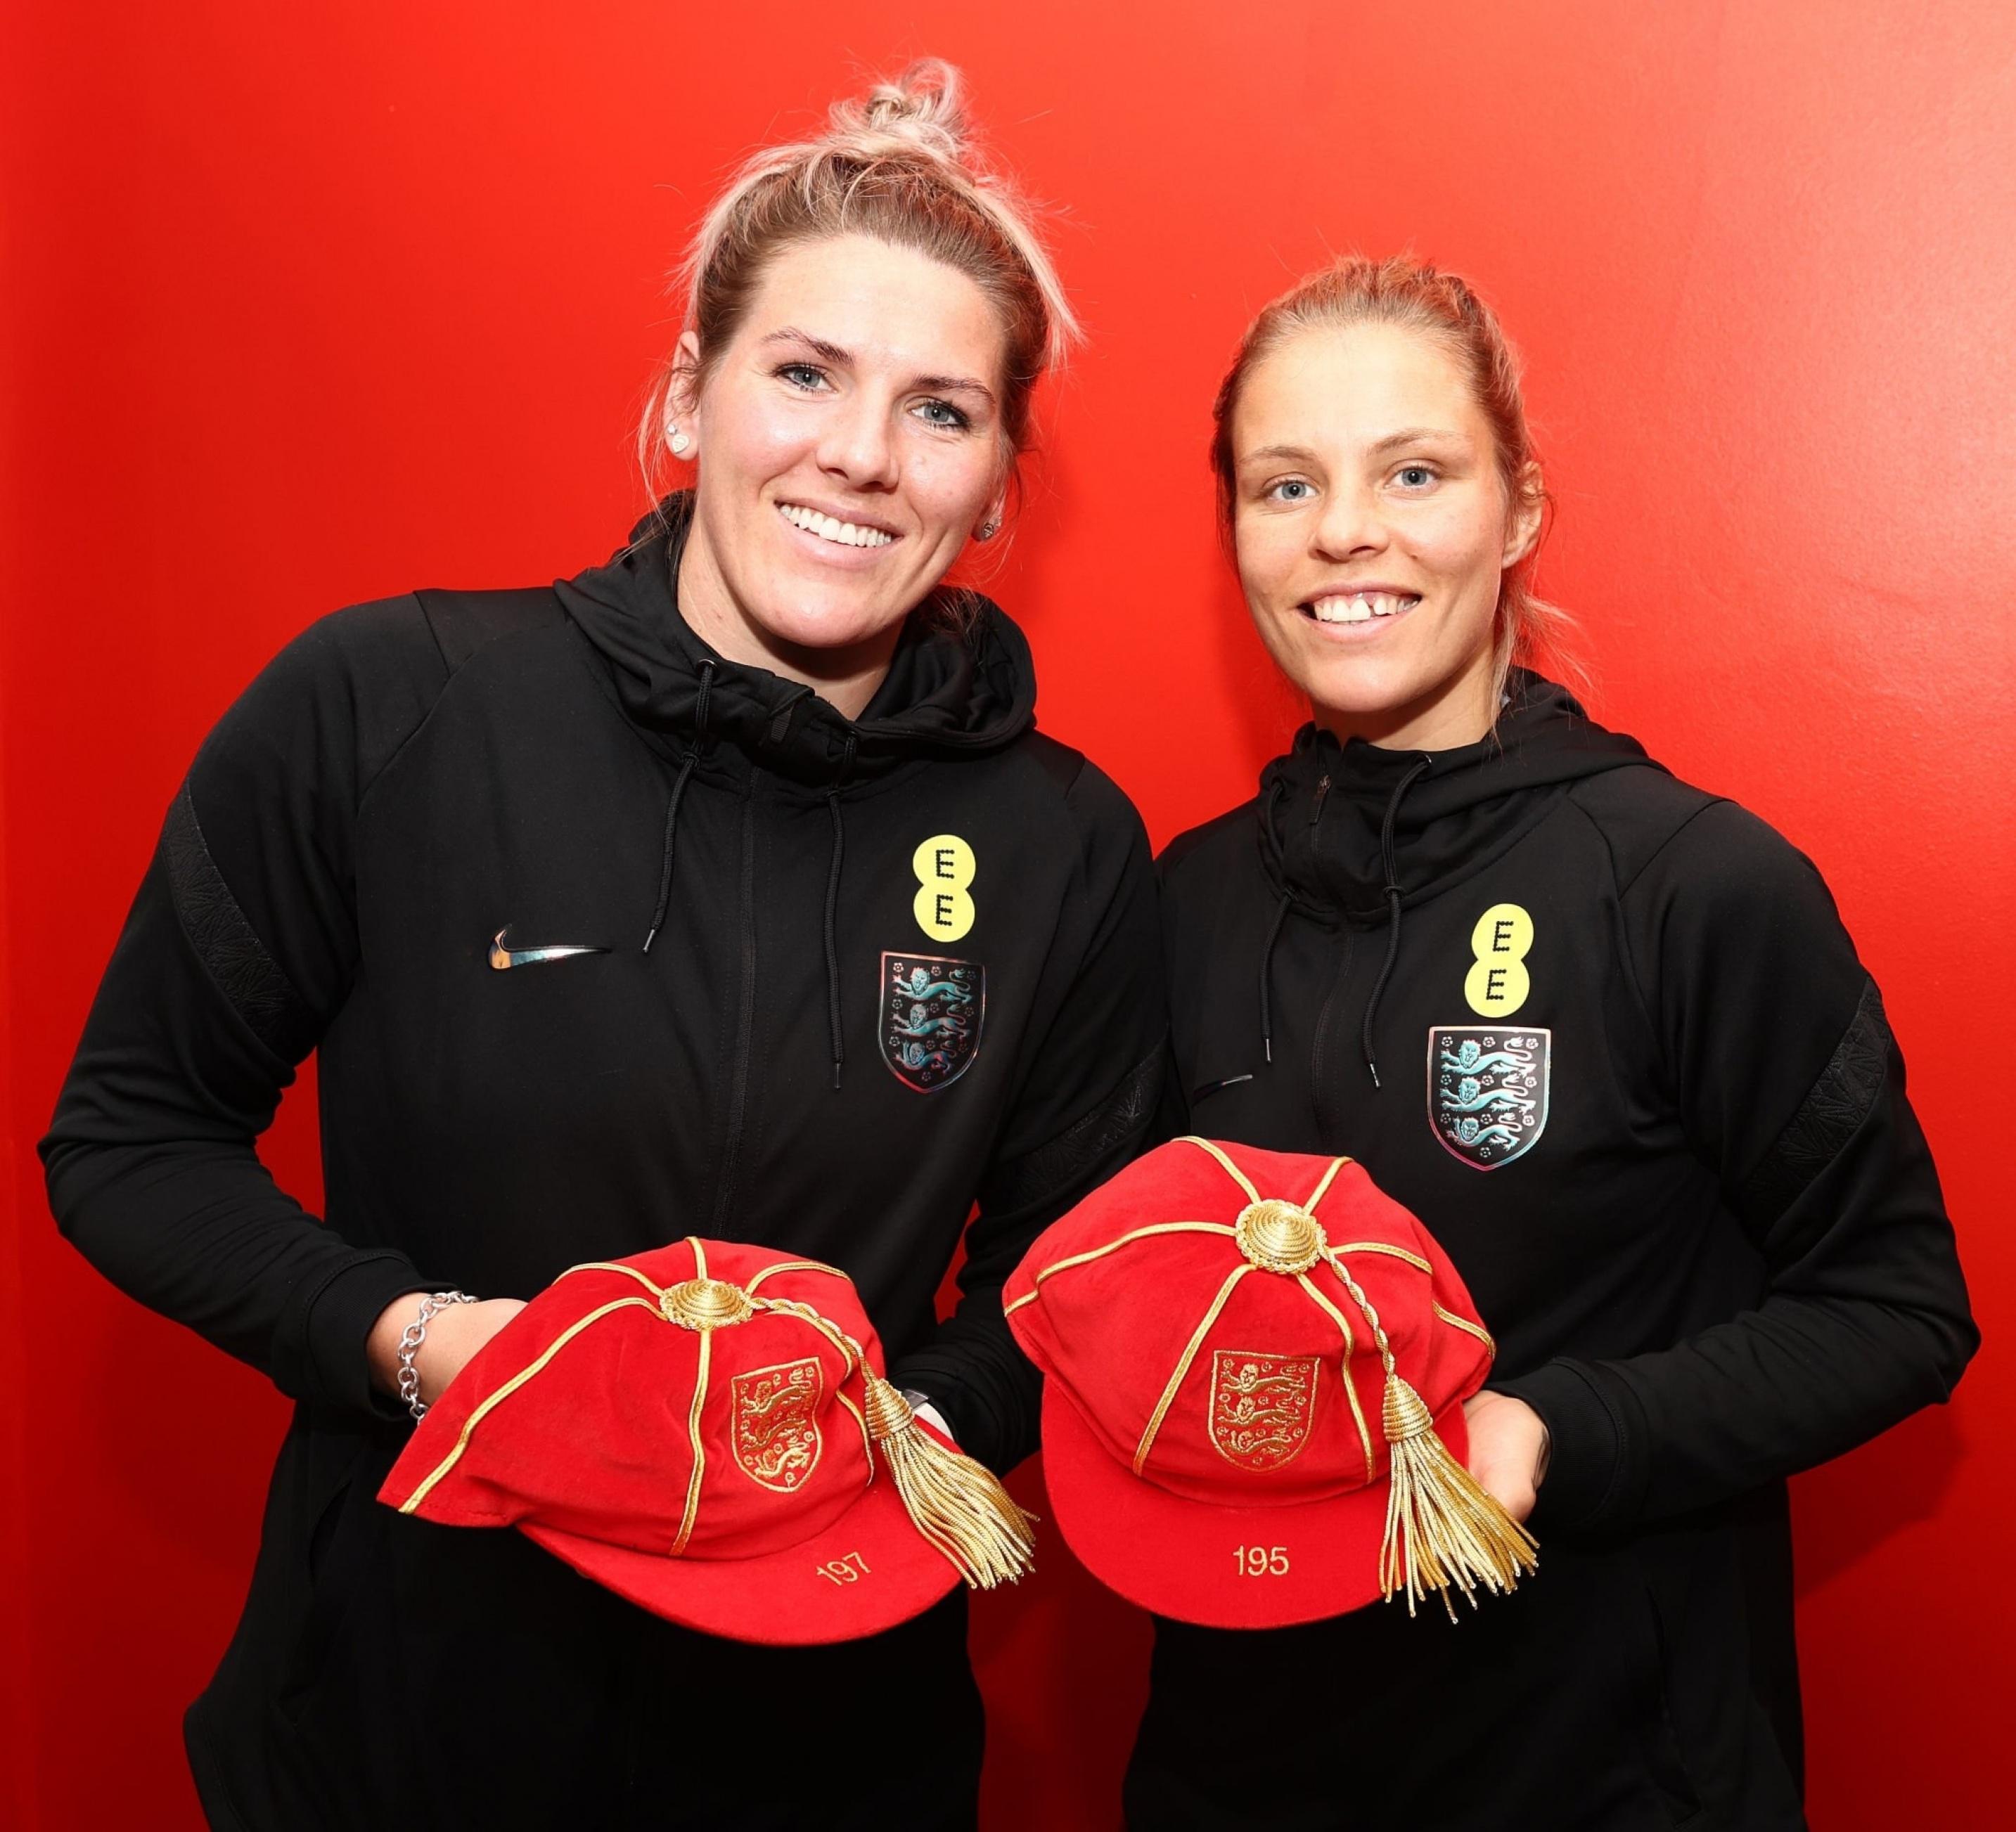 领取小红帽[鲜花]英格兰女足队员们领取了印有自己Legacy number的纪念(4)